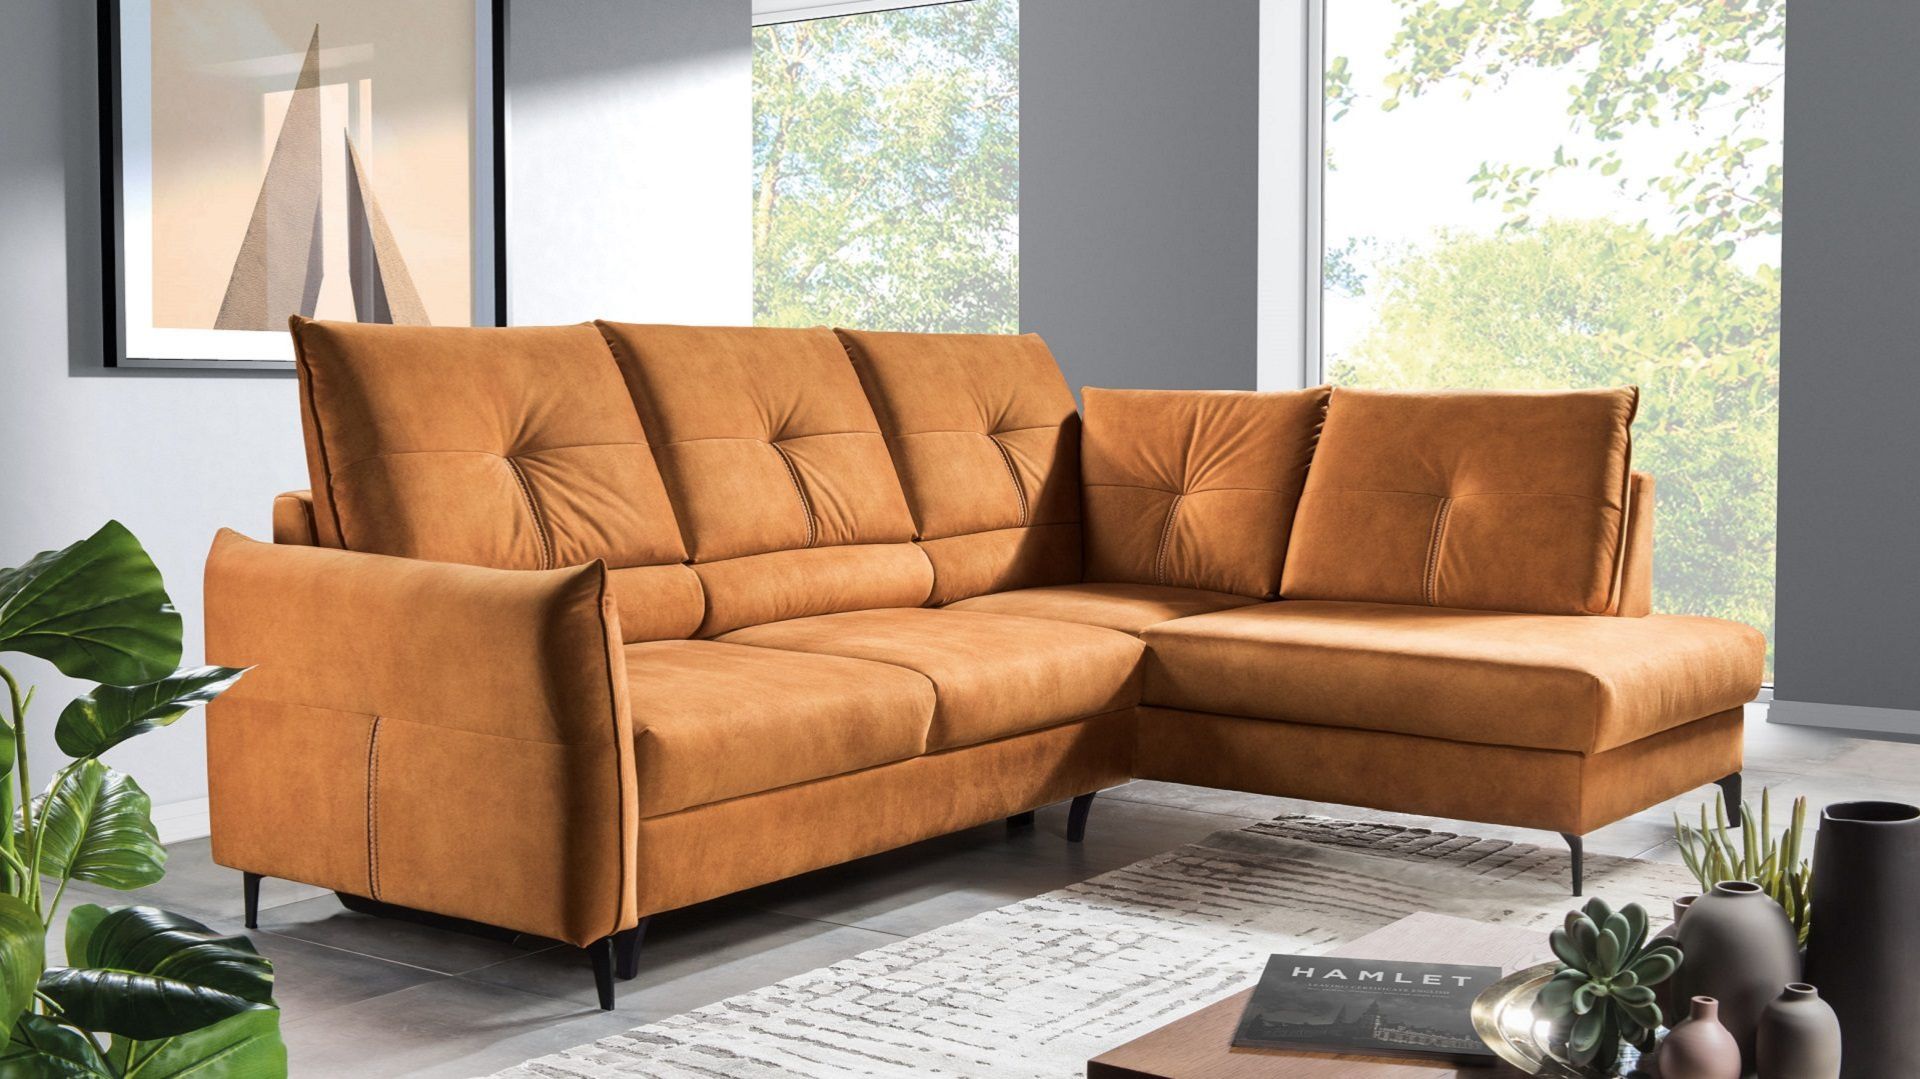 Trendy 2021. Kolorowa sofa w salonie. 15 świetnych modeli